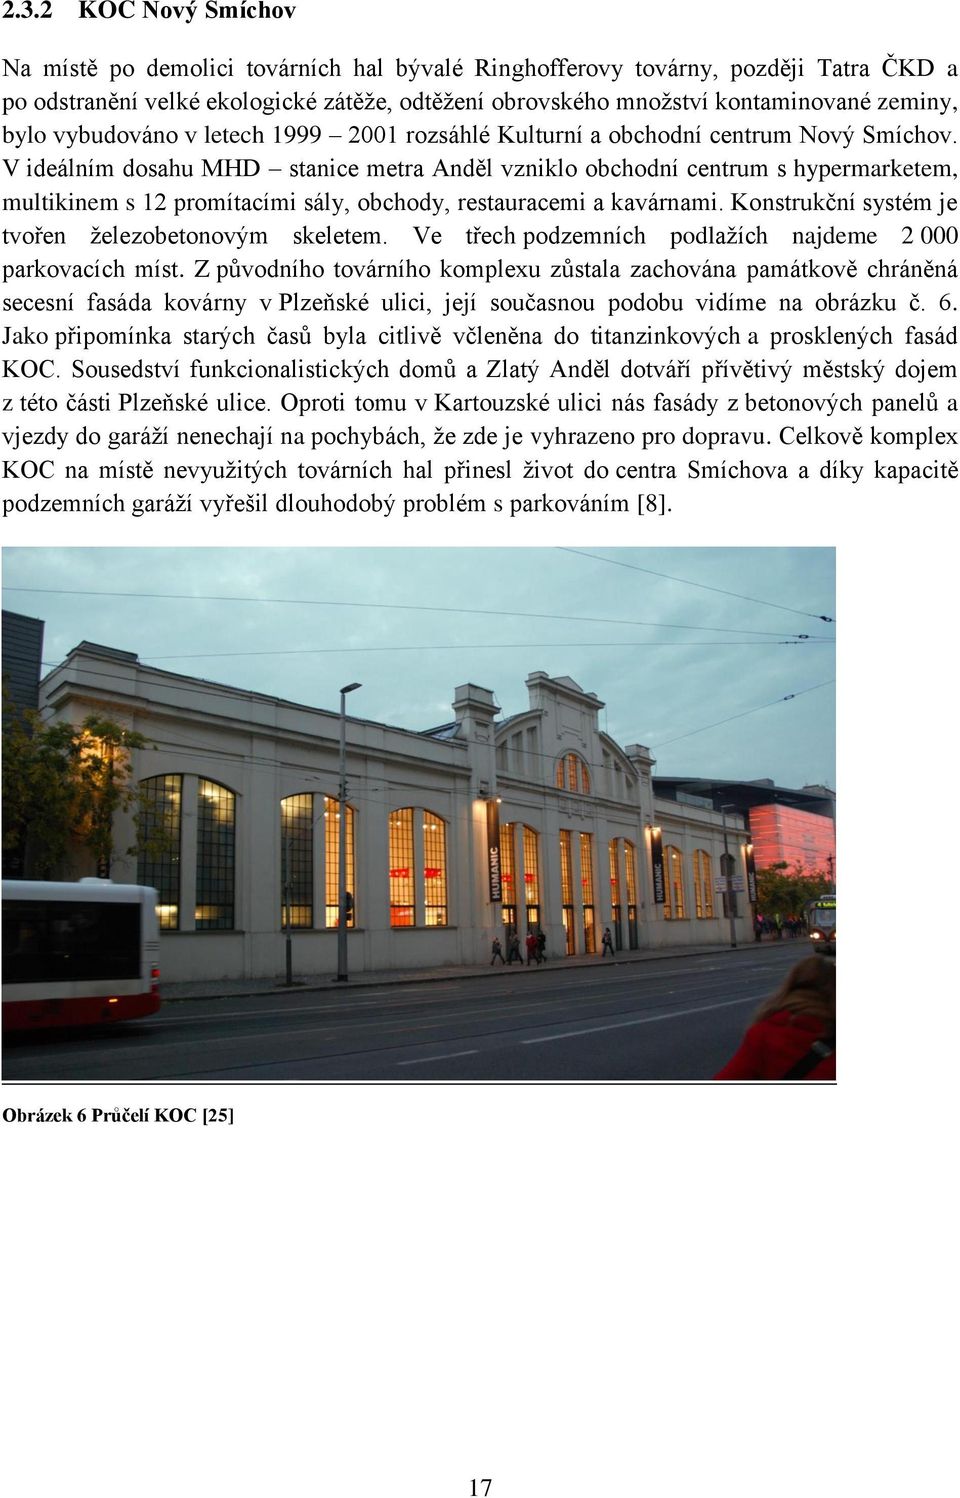 V ideálním dosahu MHD stanice metra Anděl vzniklo obchodní centrum s hypermarketem, multikinem s 12 promítacími sály, obchody, restauracemi a kavárnami.